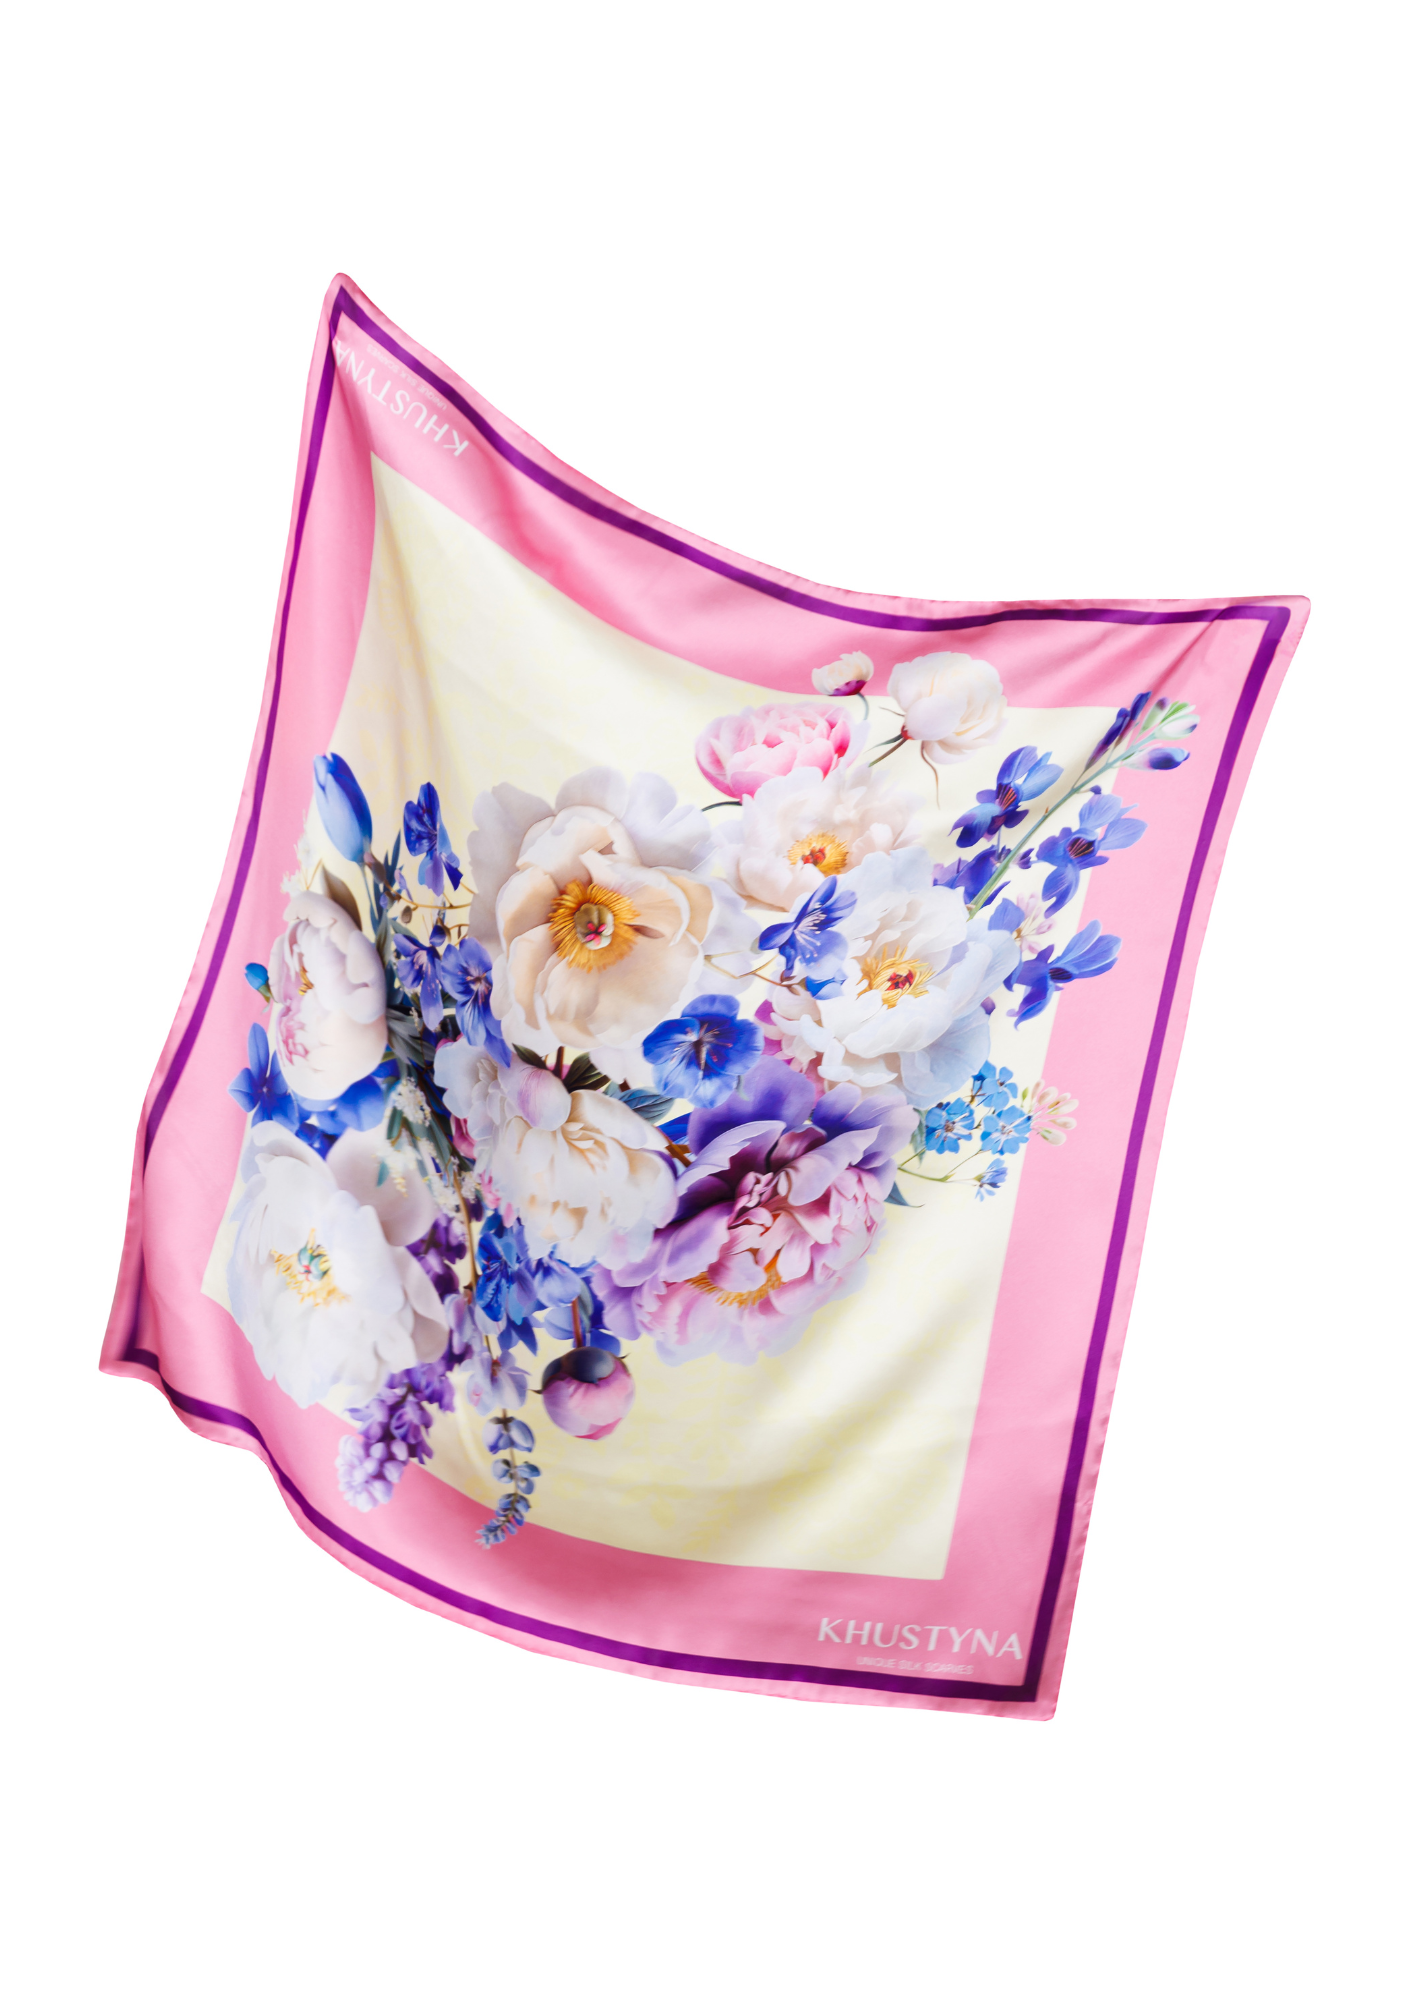 Silk scarf - Ukrainian may flowers